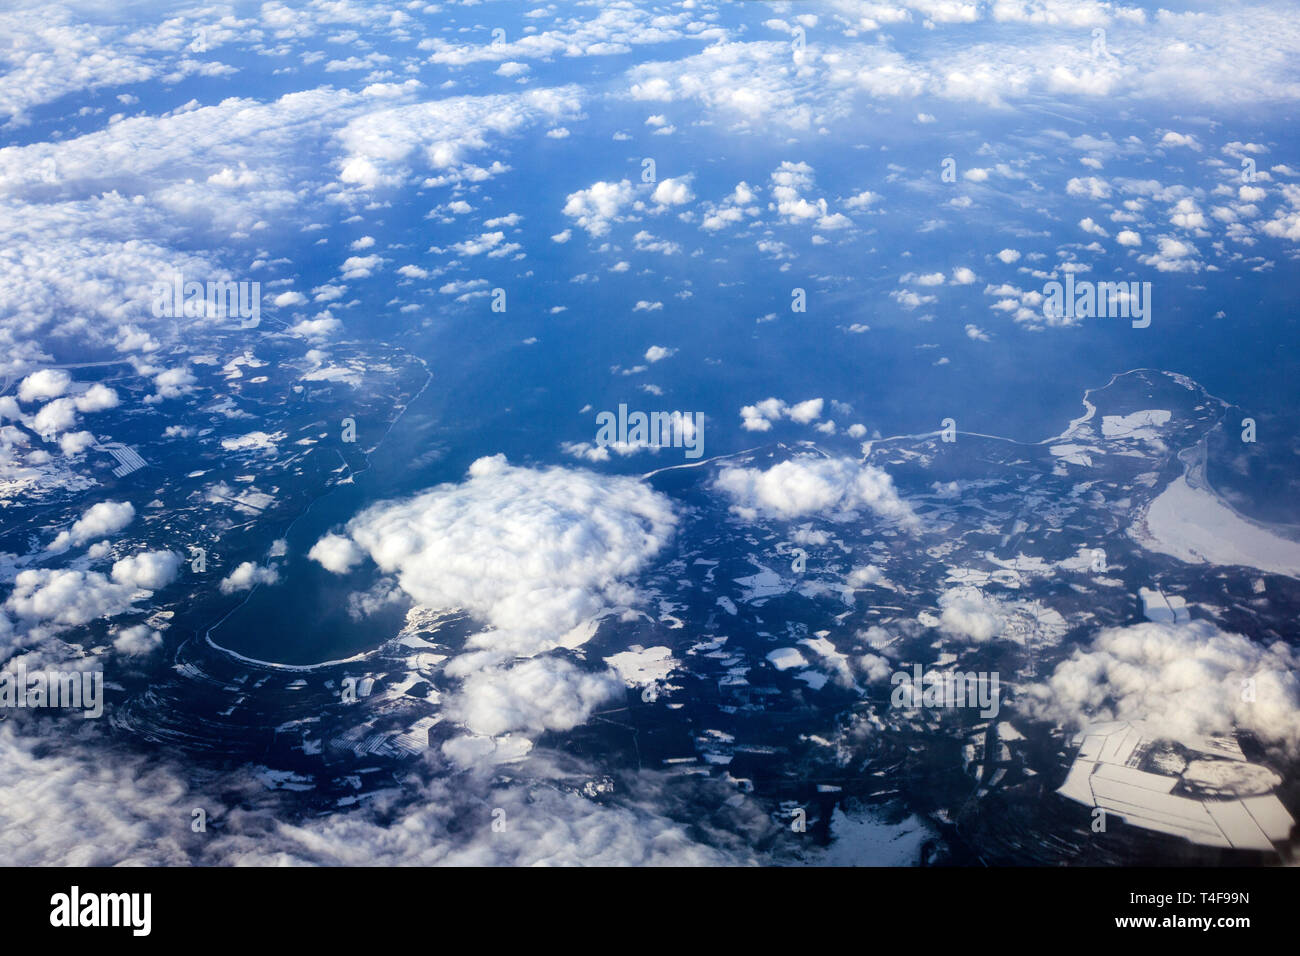 Durante il volo da Praga a Helsinki del 20 febbraio 2018 si osserva un paesaggio tipico della Finlandia con laghi innevati. (Foto CTK/Krystof Kriz) Foto Stock